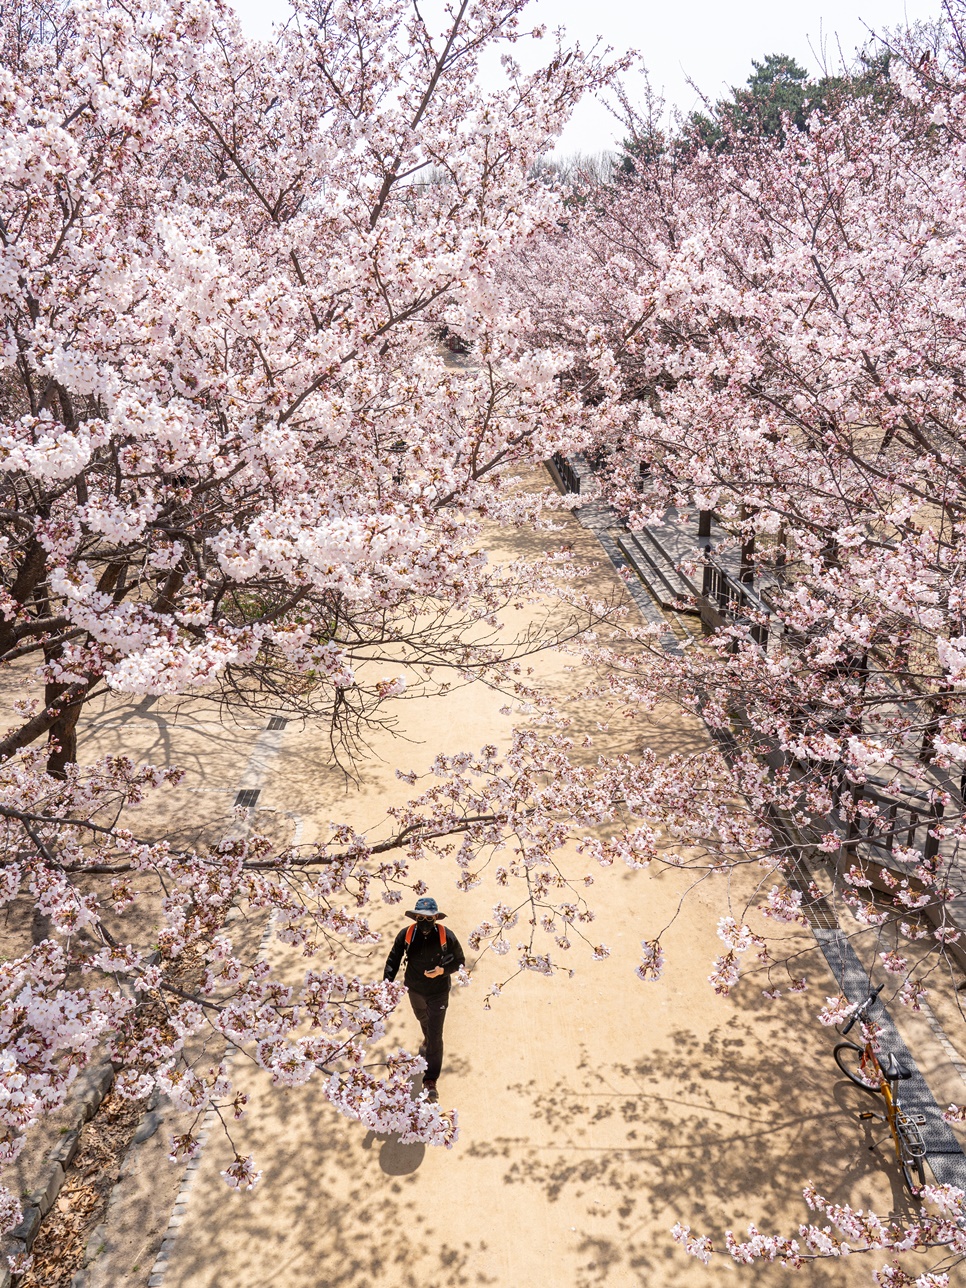 서울 벚꽃 명소 : 성수동 서울숲, 잠실 석촌호수, 여의도 실시간 벚꽃 개화 상황